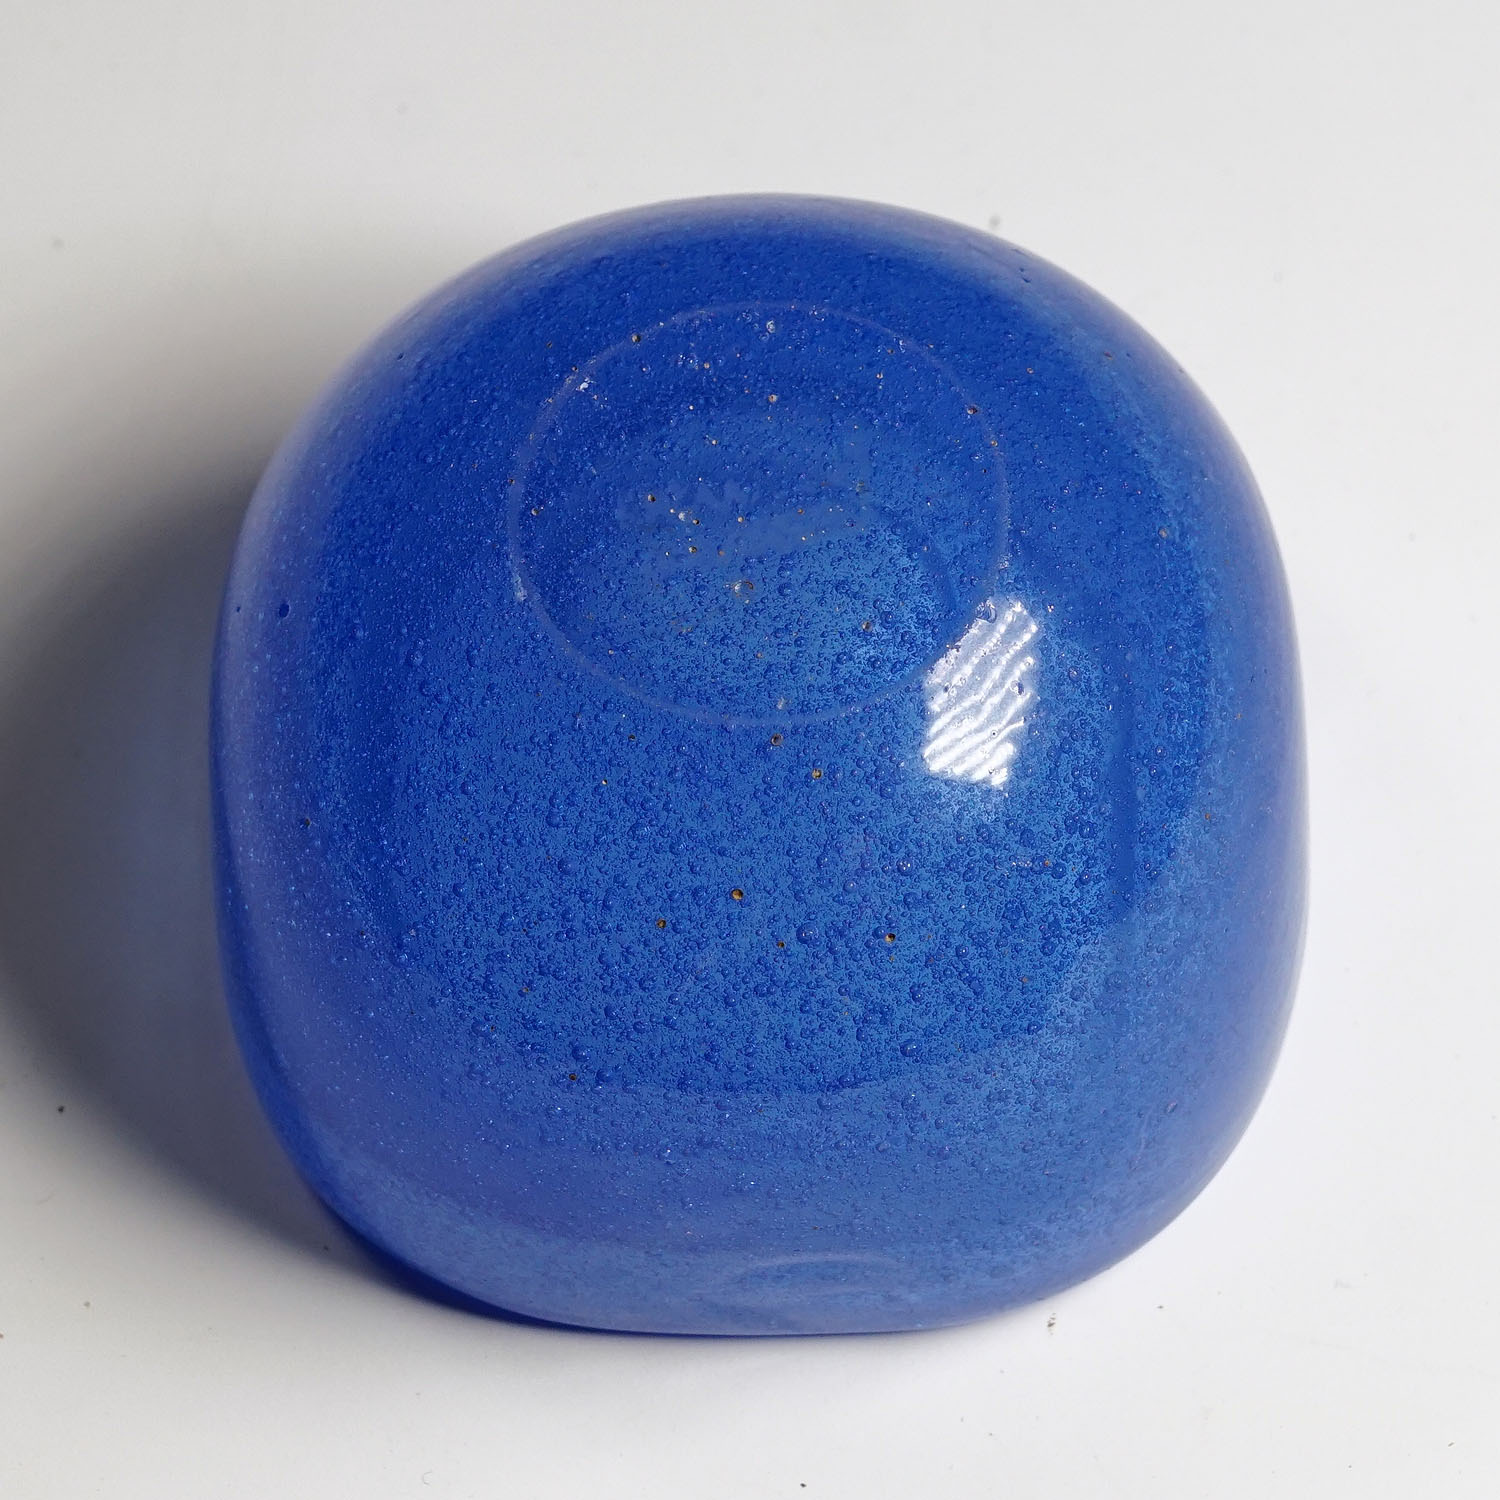 Small Bowl in Blue Bollicine Glass, Carlo Scarpa for Venini Murano 1930s